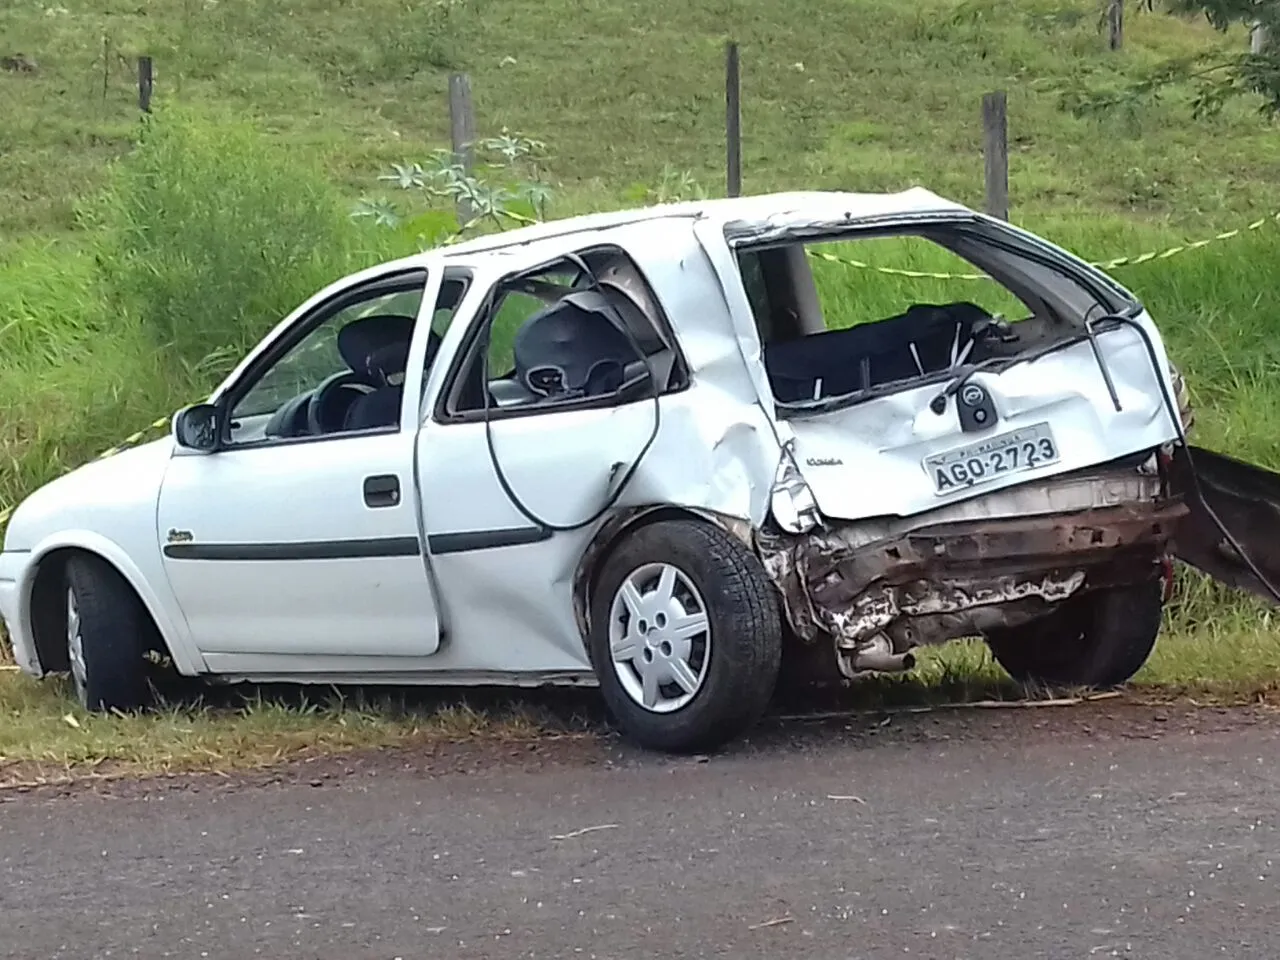 Cinco pessoas ficam feridas após acidente entre carro e furgão em Jandaia do Sul